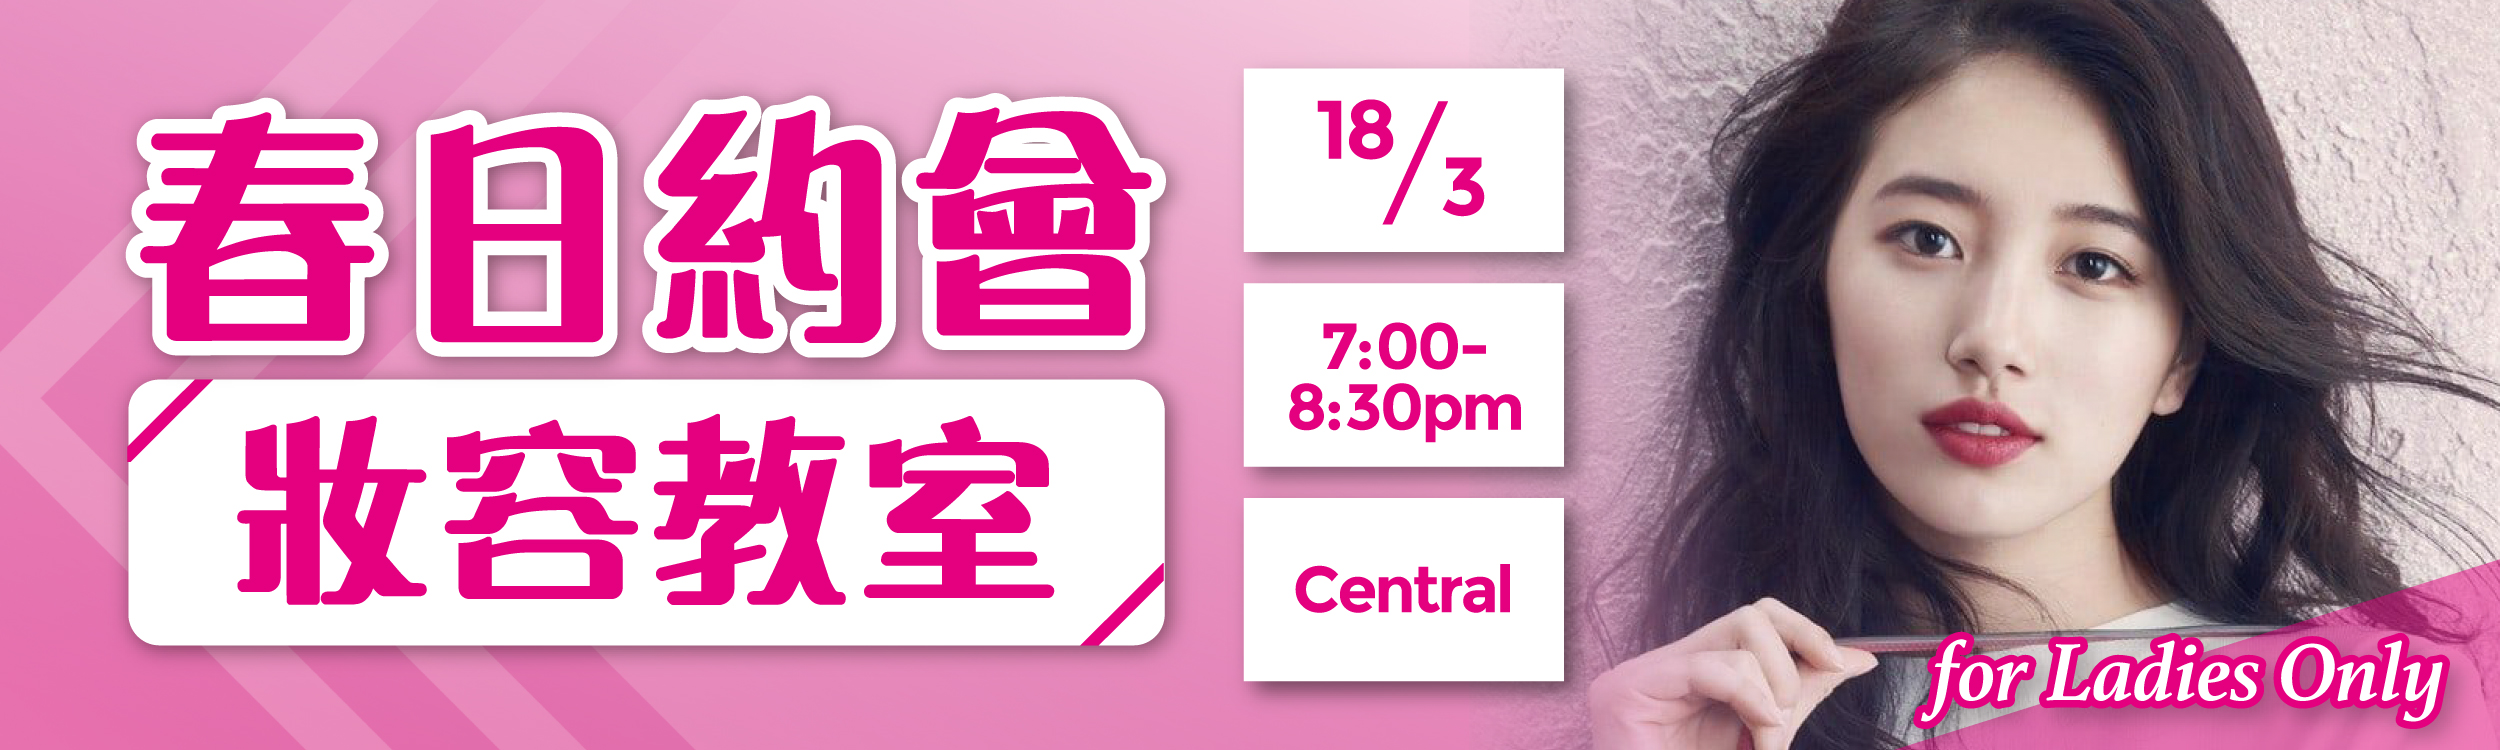 (完滿舉行)春日約會妝容教室 for Ladies Only - 2020年3月18日(星期三) 香港交友約會業協會 Hong Kong Speed Dating Federation - Speed Dating , 一對一約會, 單對單約會, 約會行業, 約會配對